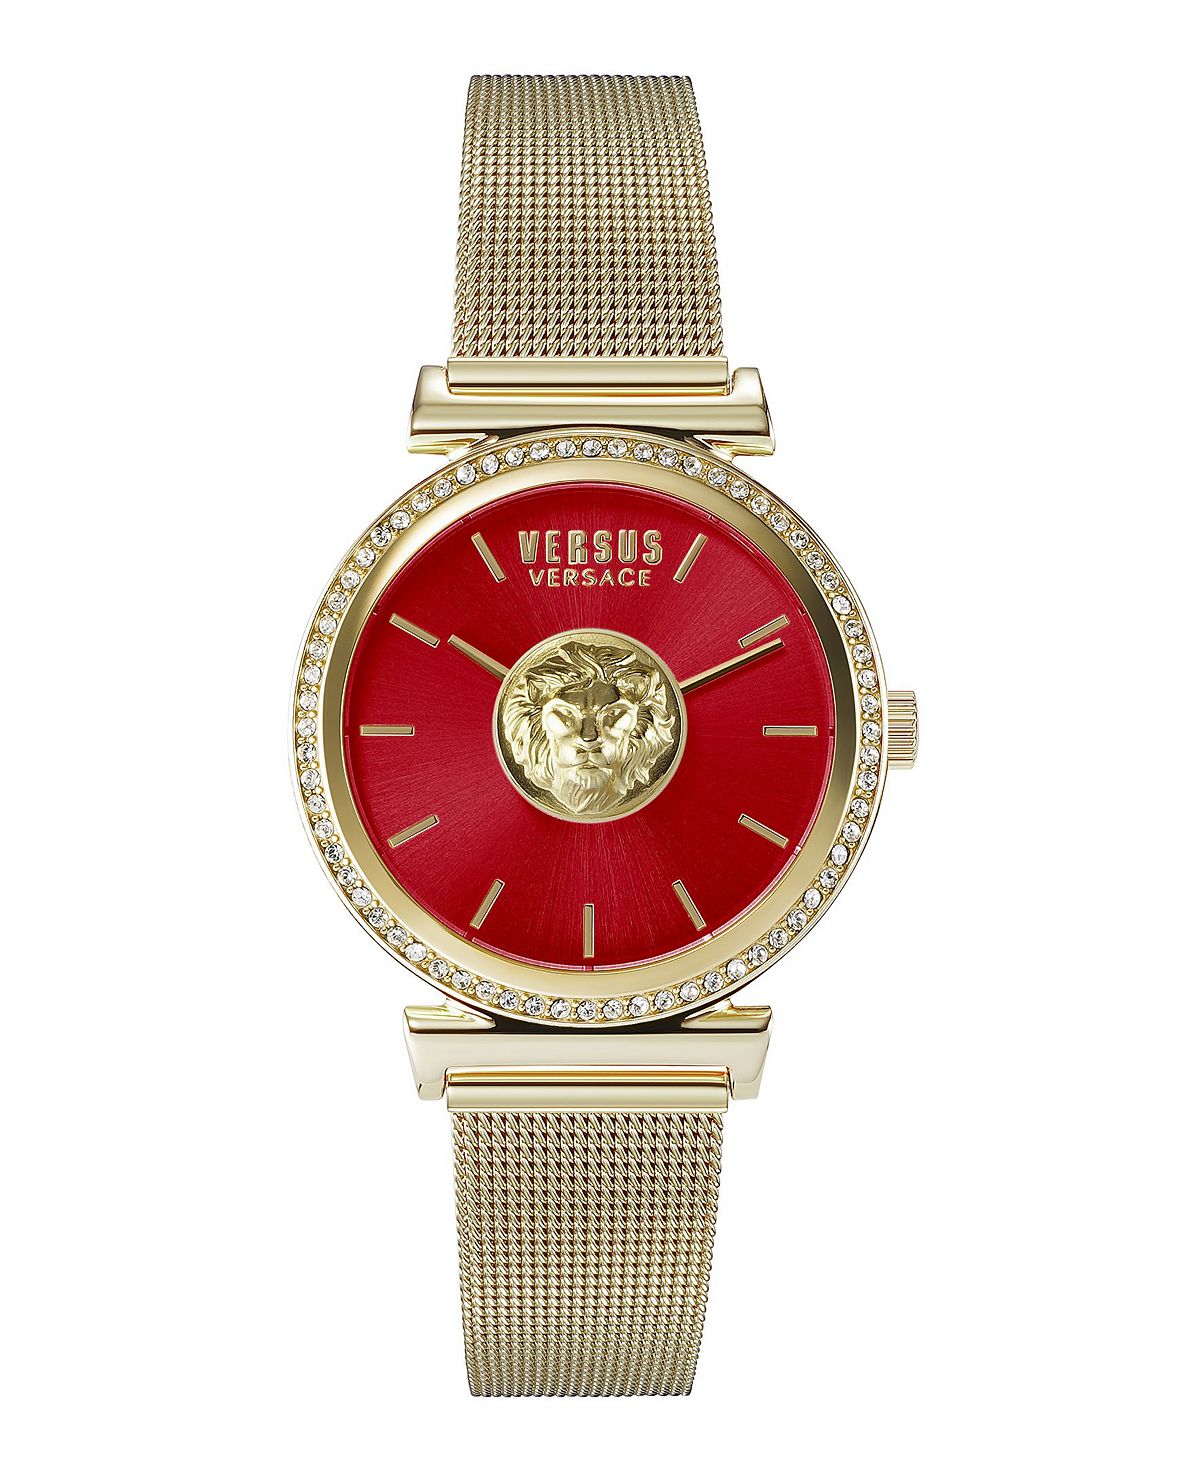 Женские часы Versus by Versace Brick Lane золотистого цвета с браслетом из нержавеющей стали, 34 мм Versus Versace, золотой